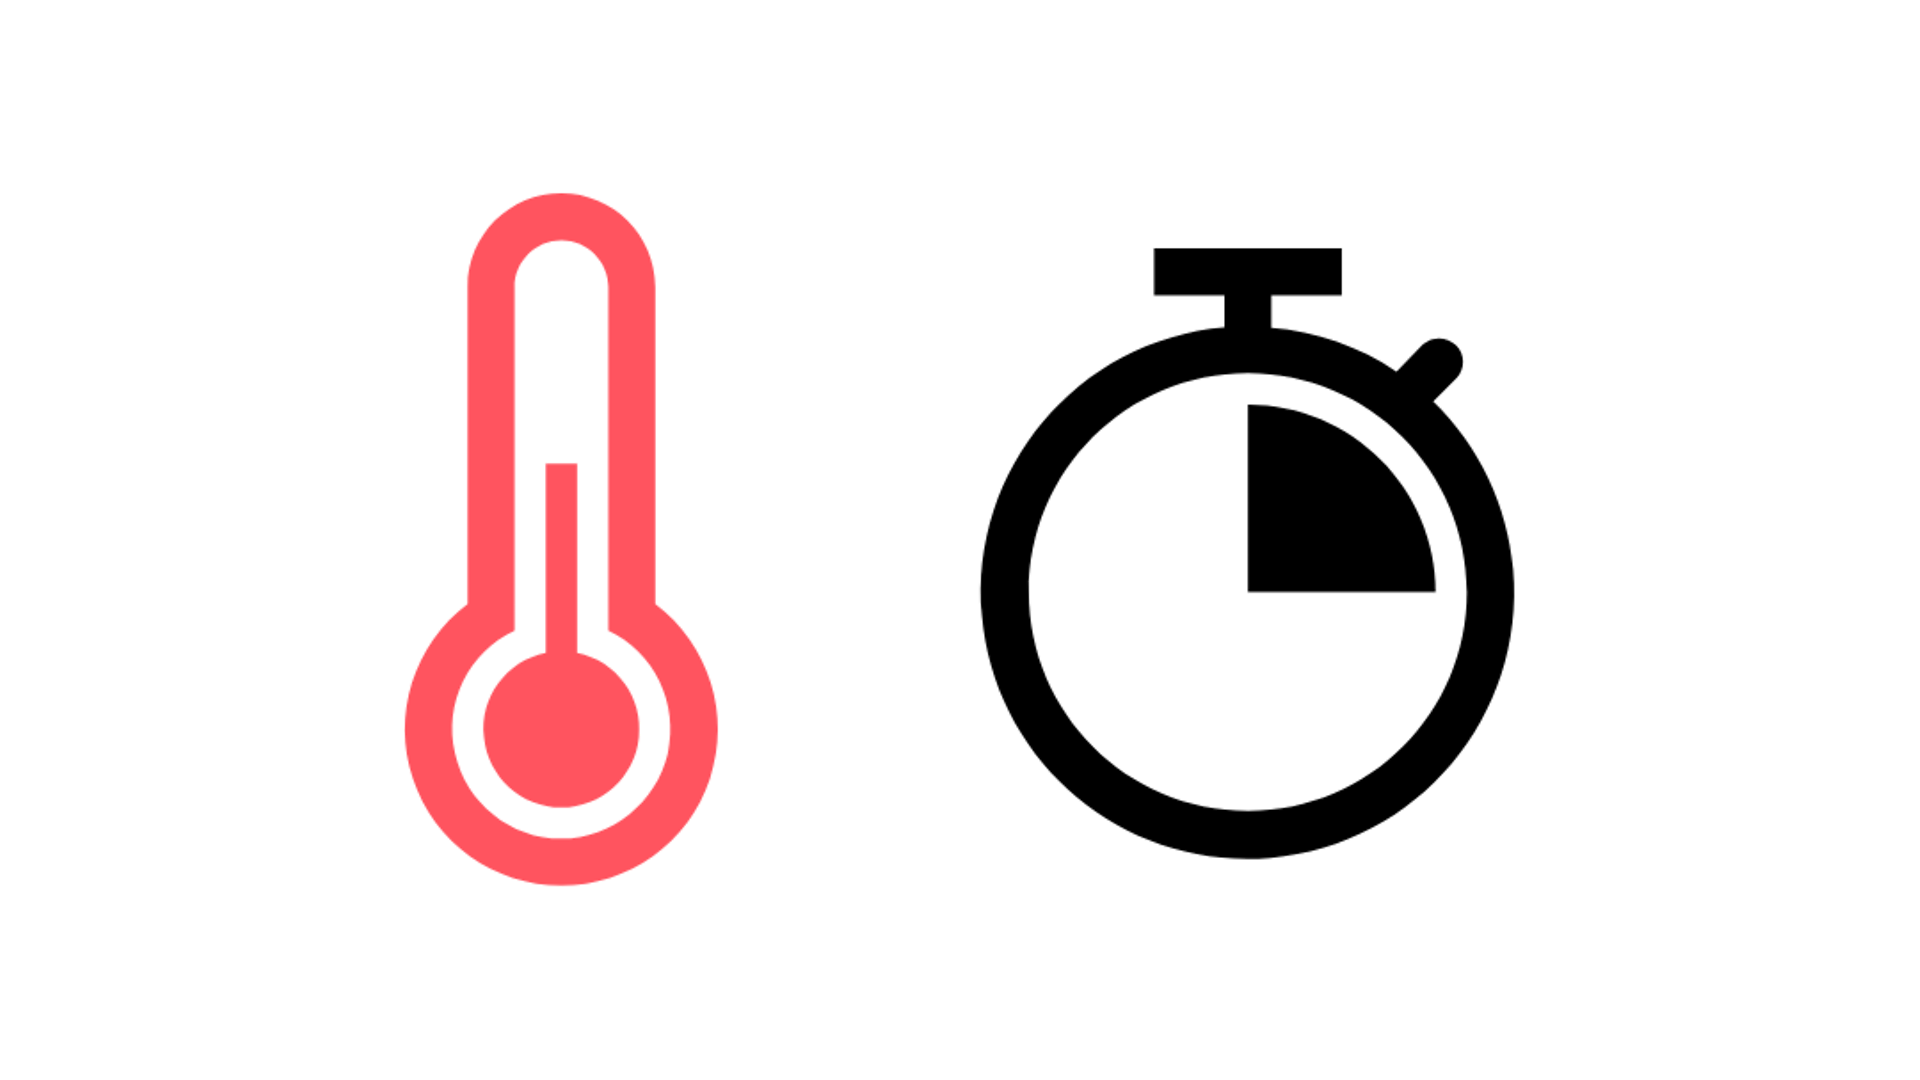 красный символ термометра и символ часов, четверть часа